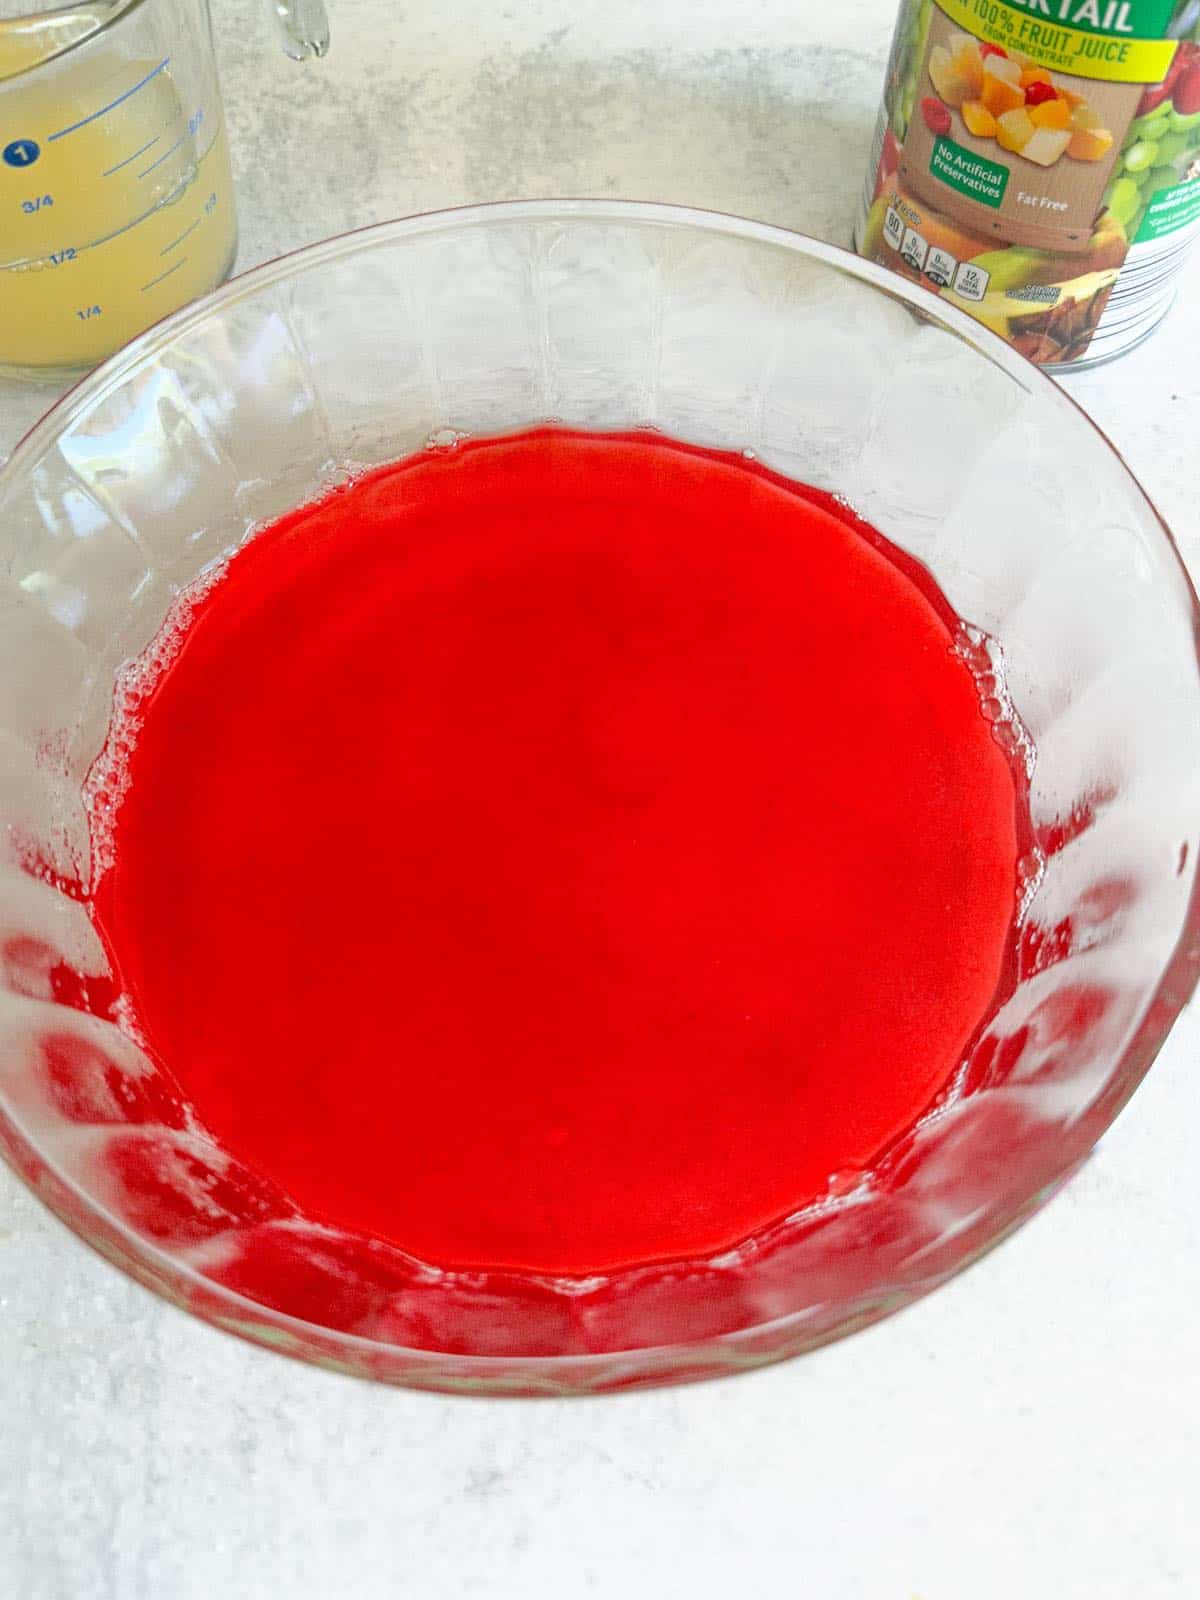 Strawberry jello in a bowl.